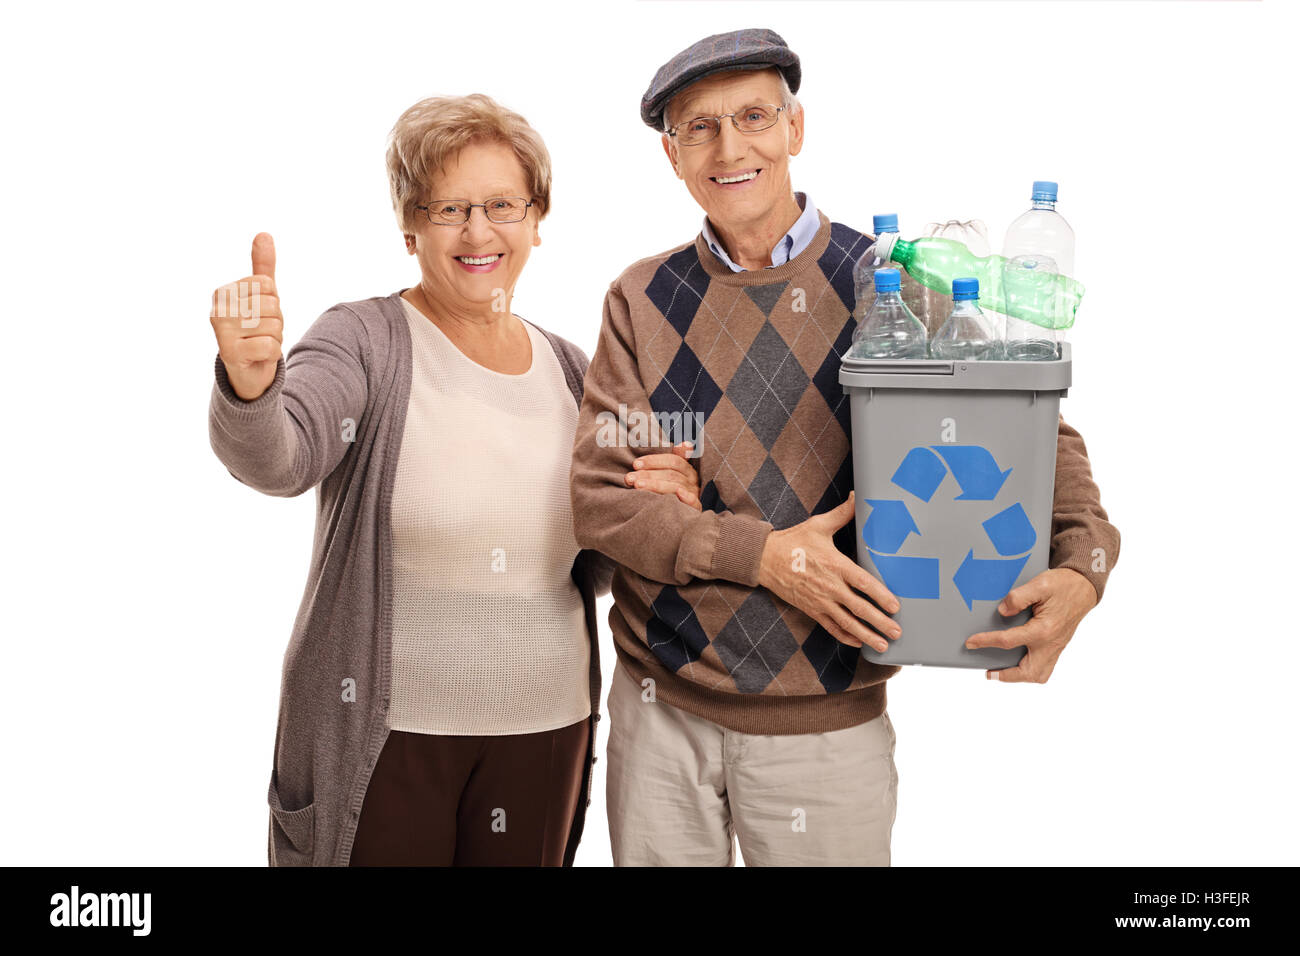 Uomo anziano tenendo un cestino pieno di bottiglie di plastica e una donna matura dando un pollice in alto isolato su sfondo bianco Foto Stock